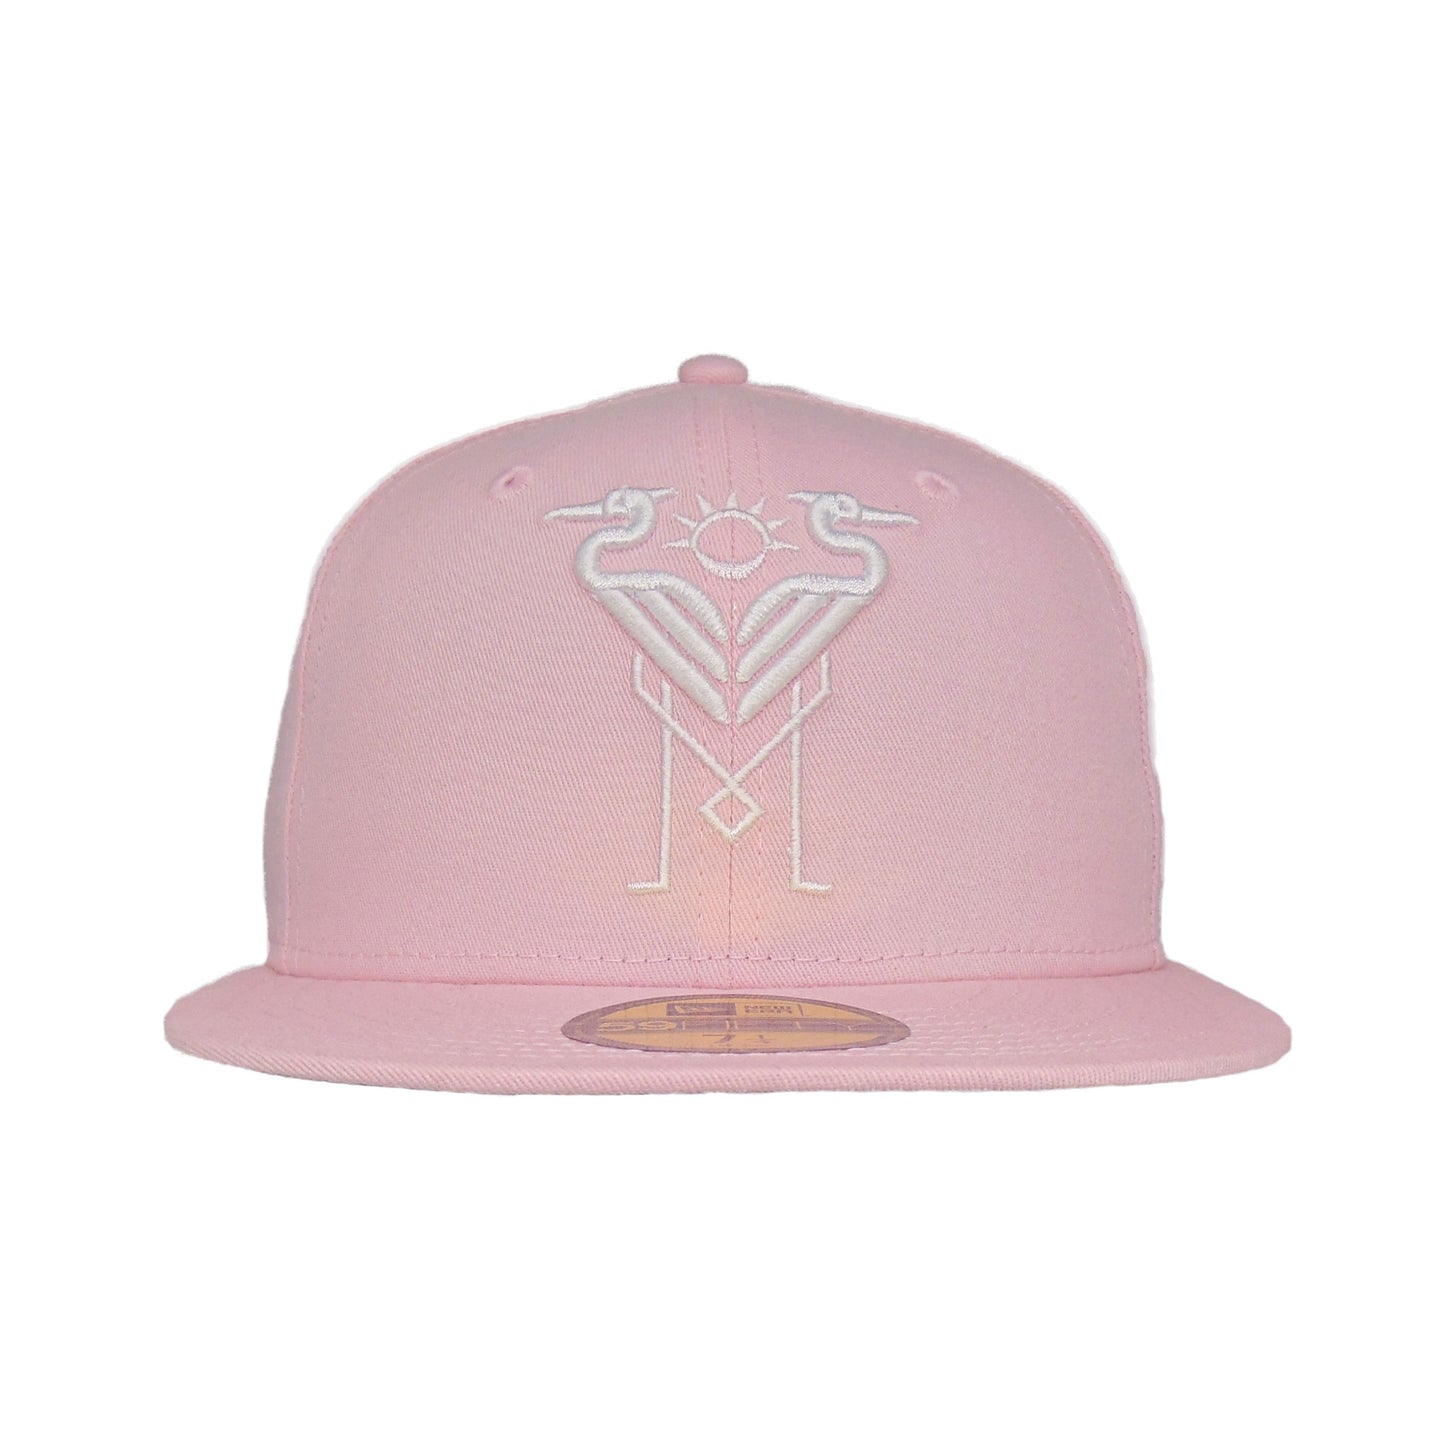 Inter Miami New Era 59FIFTY Cap pink